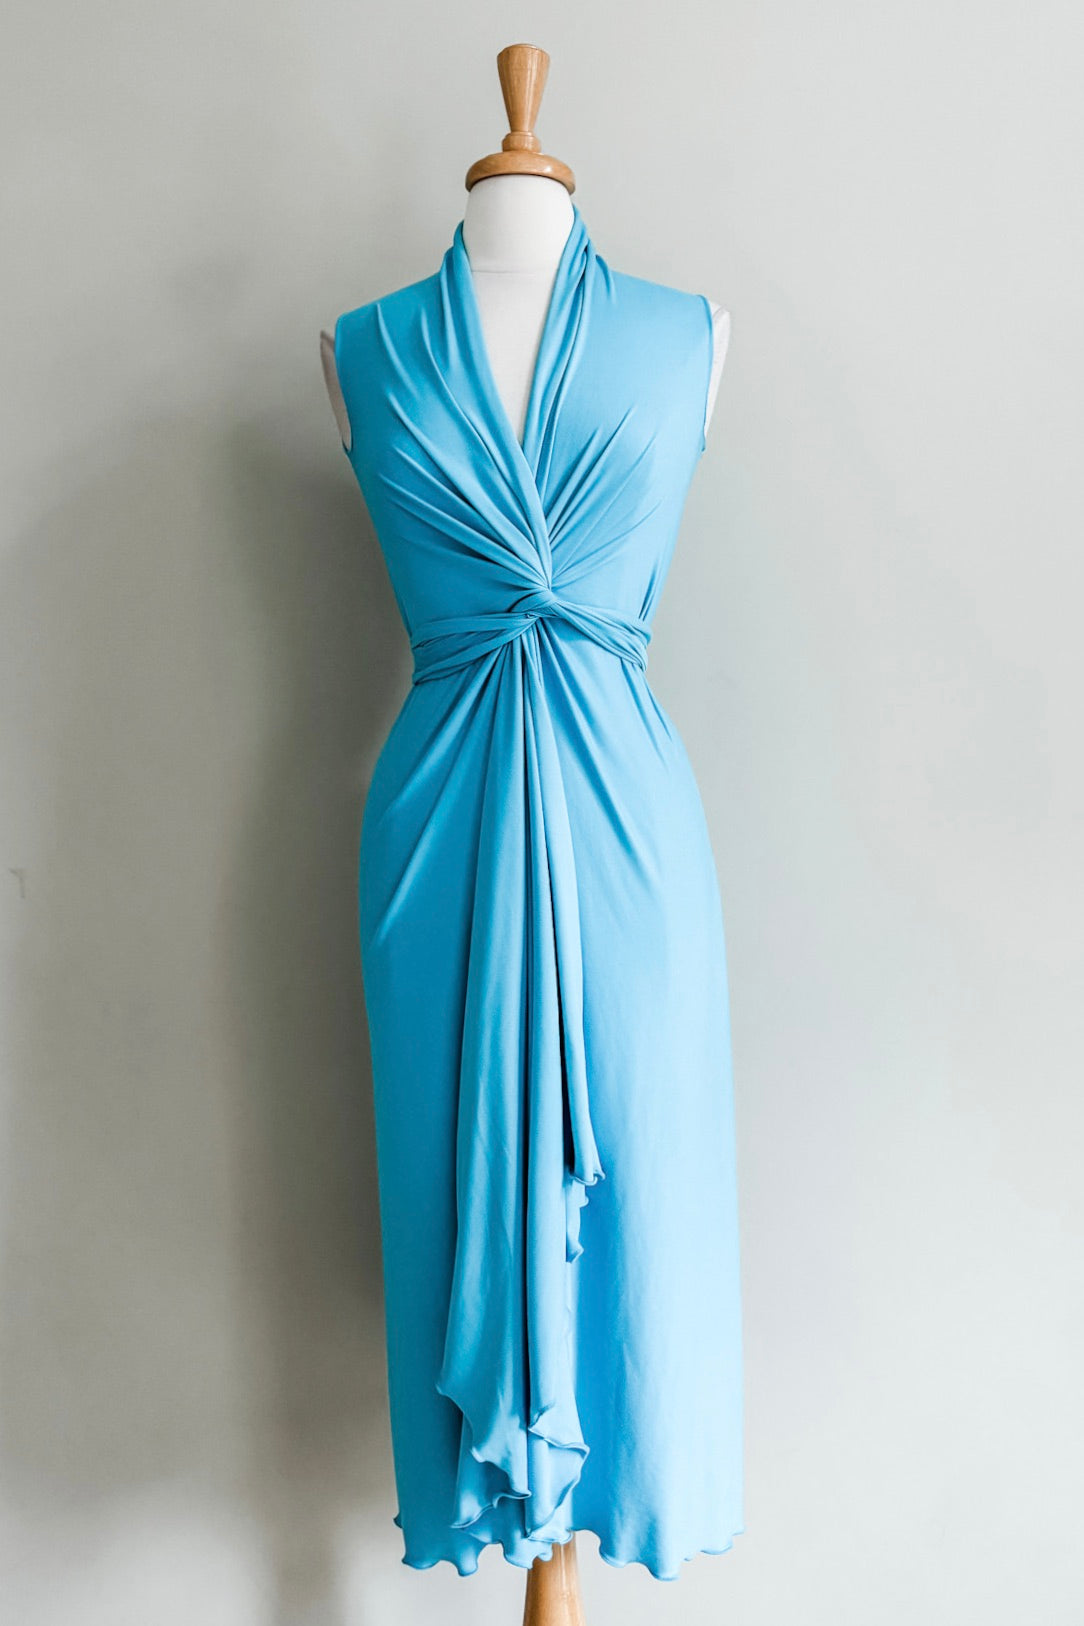 Elegant teal blue draped long, flred goddess infinity dress